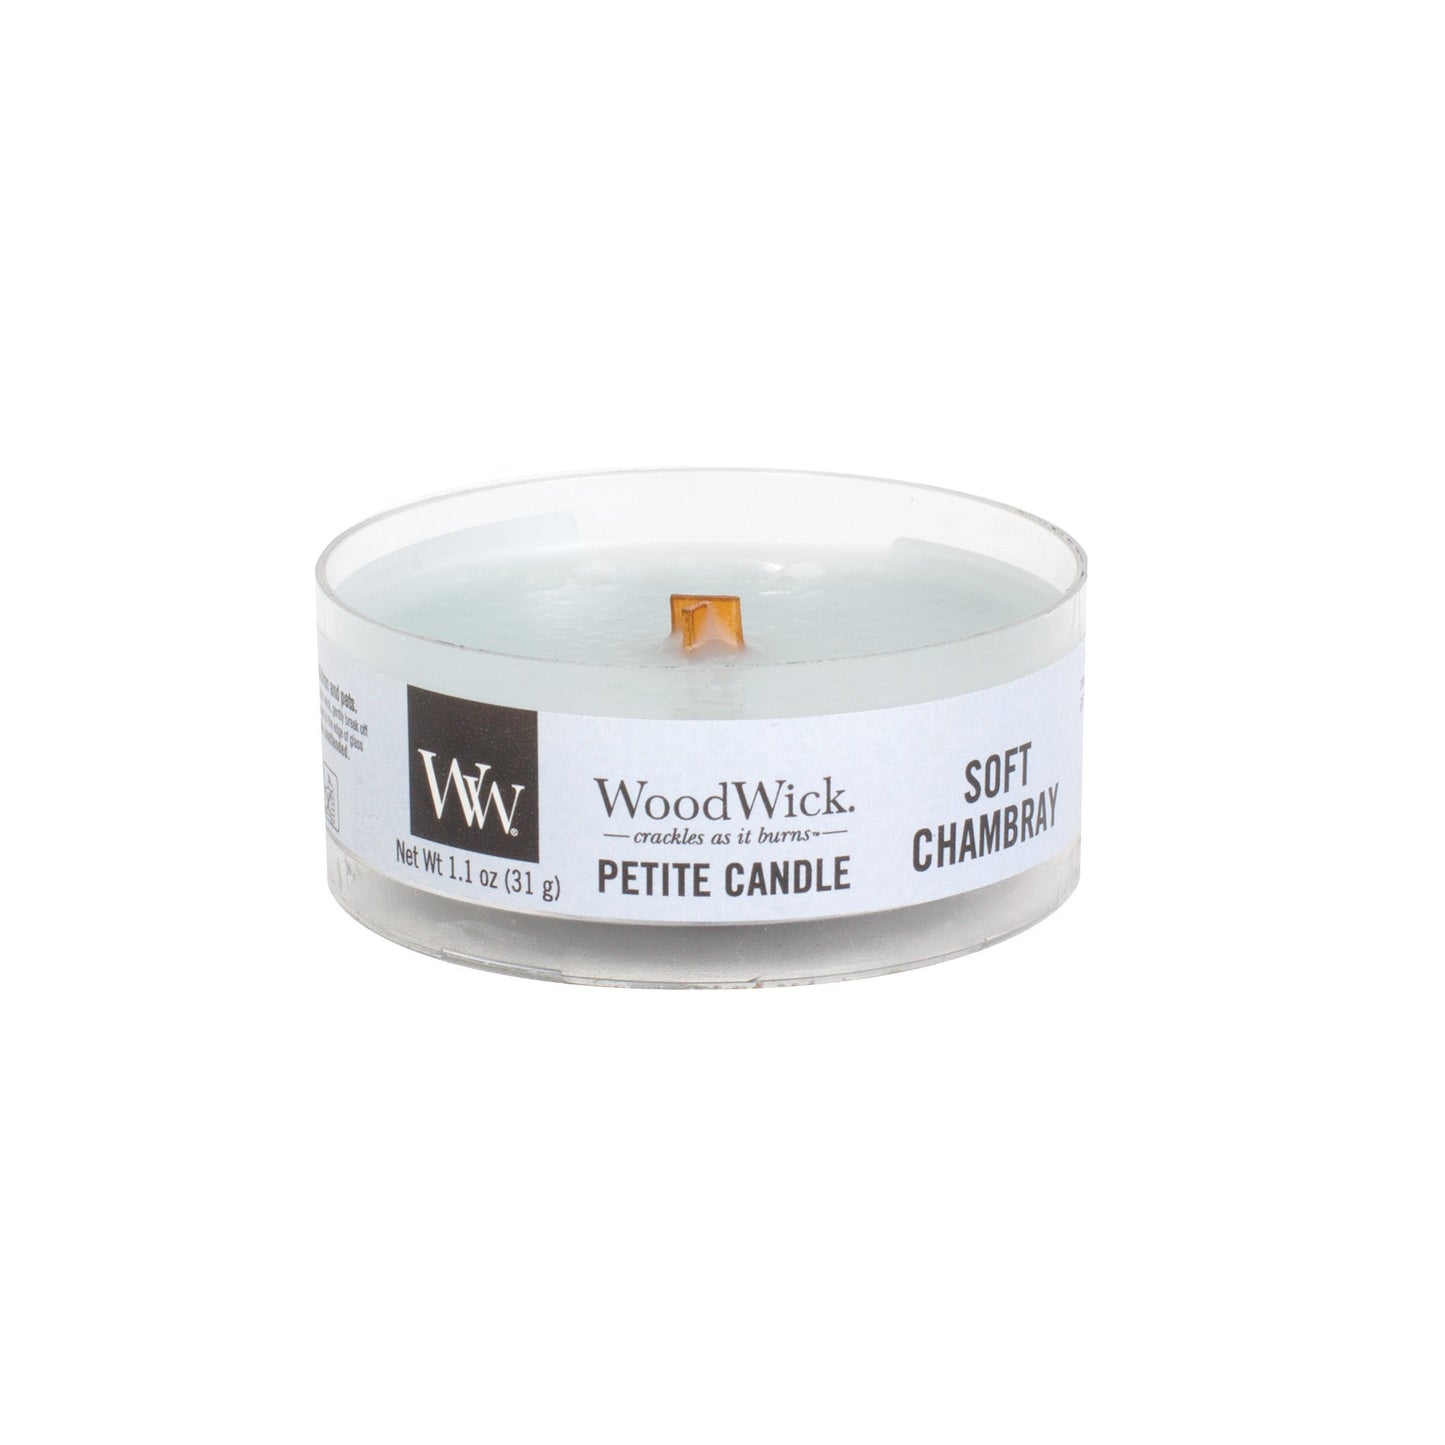 Woodwick - Candela Petite Soft Chambray